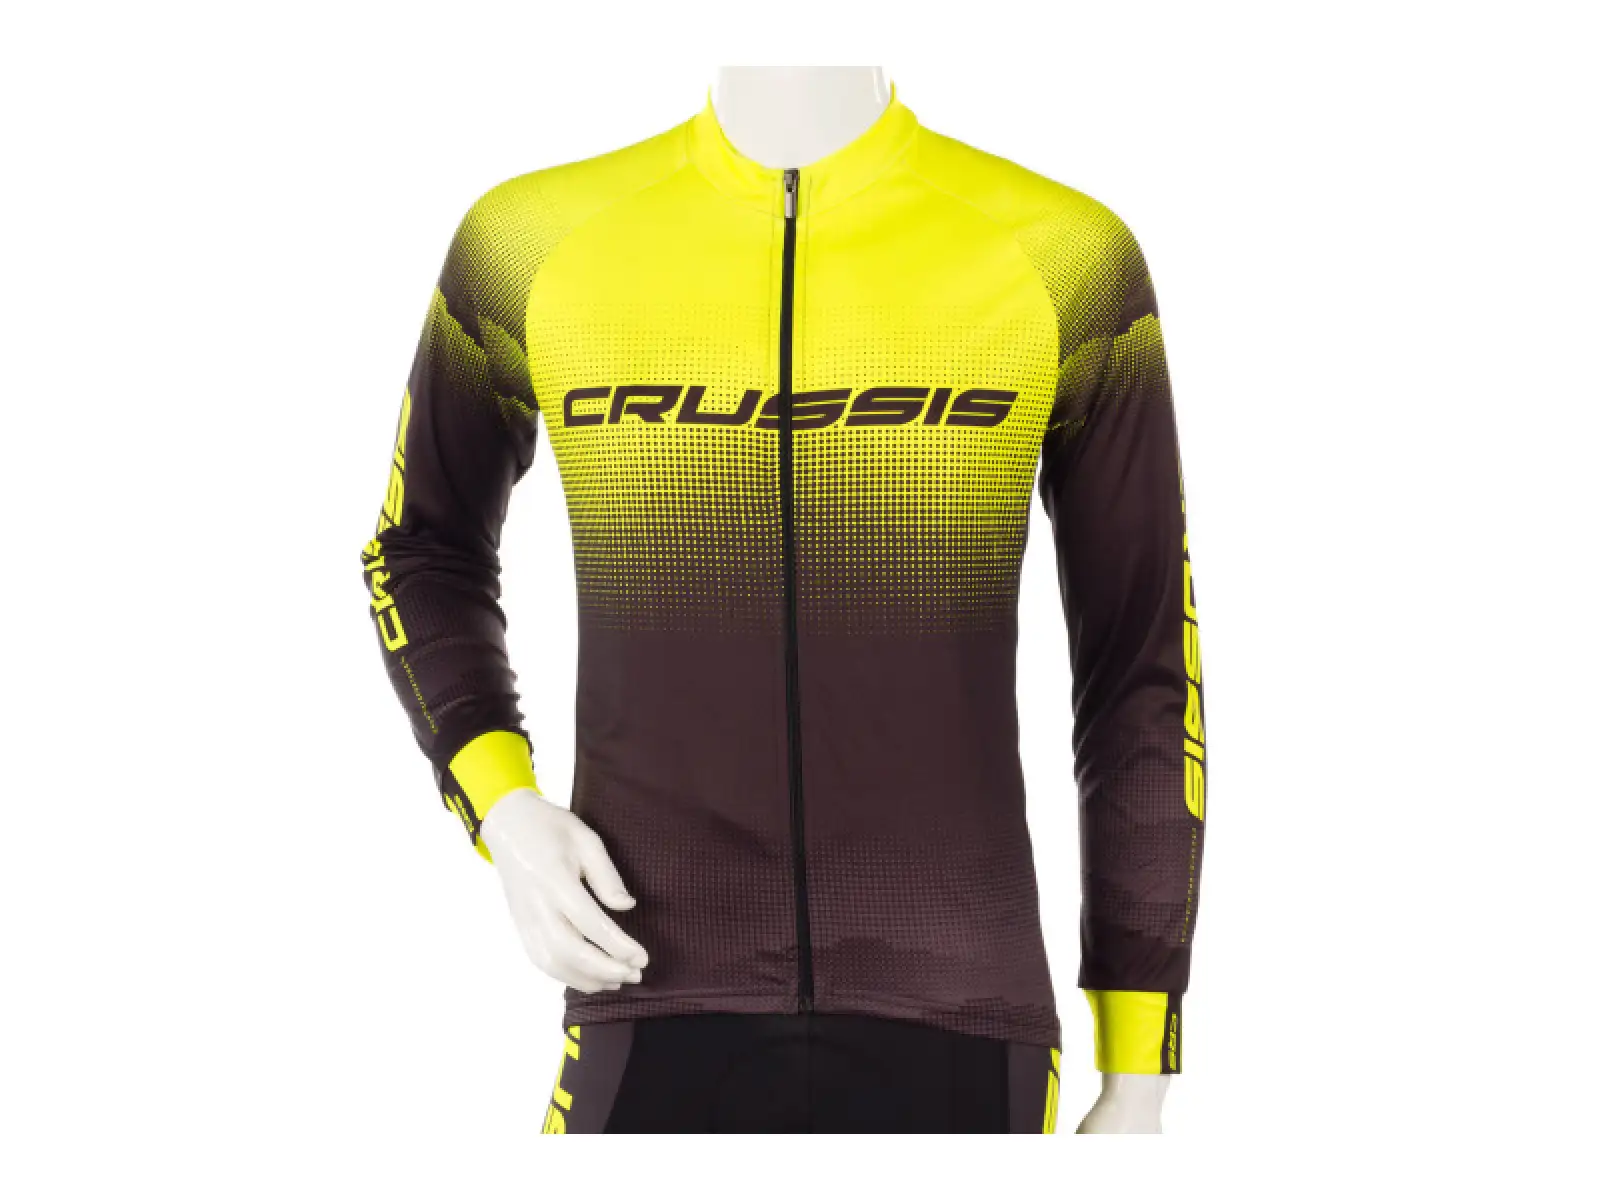 Crussis pánský cyklistický dres dlouhý rukáv černá/žlutá